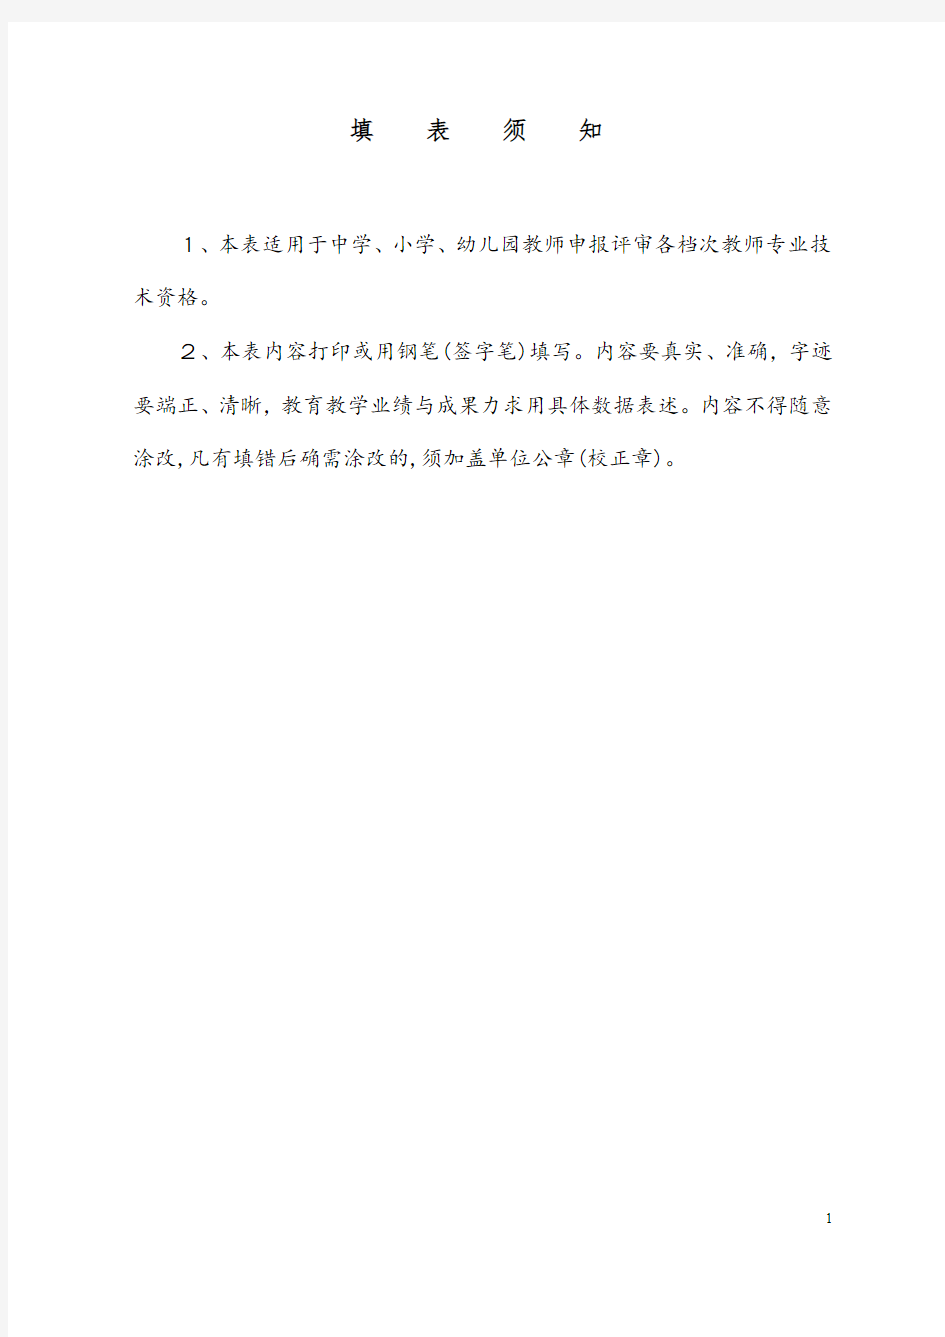 广东省教师专业技术资格申报表(基础教育系统)